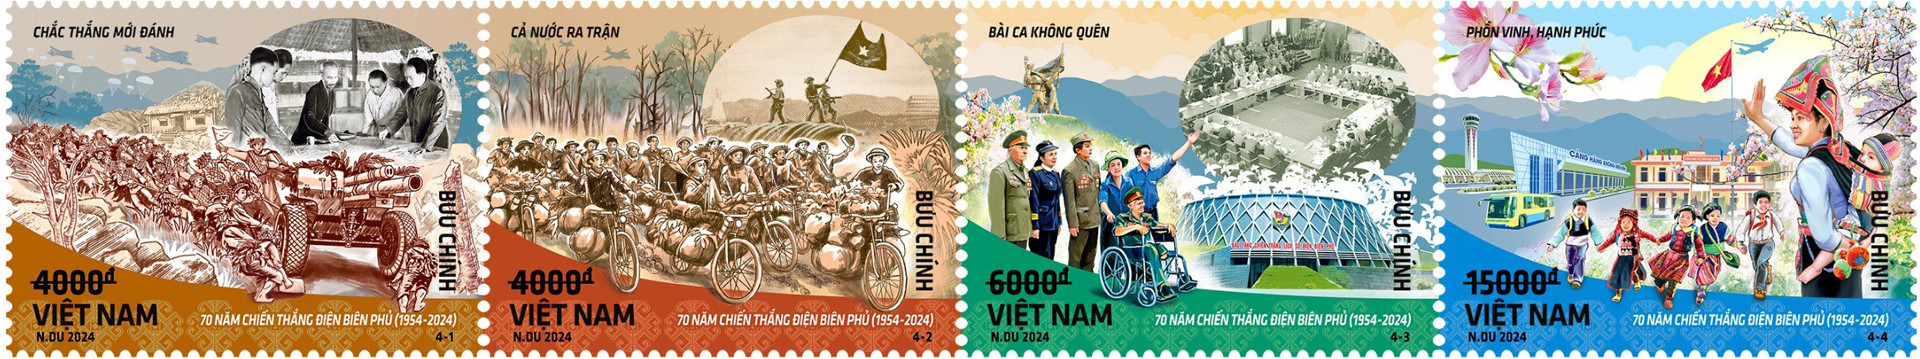 [Tin công nghệ] Bộ tem kỷ niệm 70 năm Chiến thắng Điện Biên Phủ sẽ được phát hành ngày 5/5